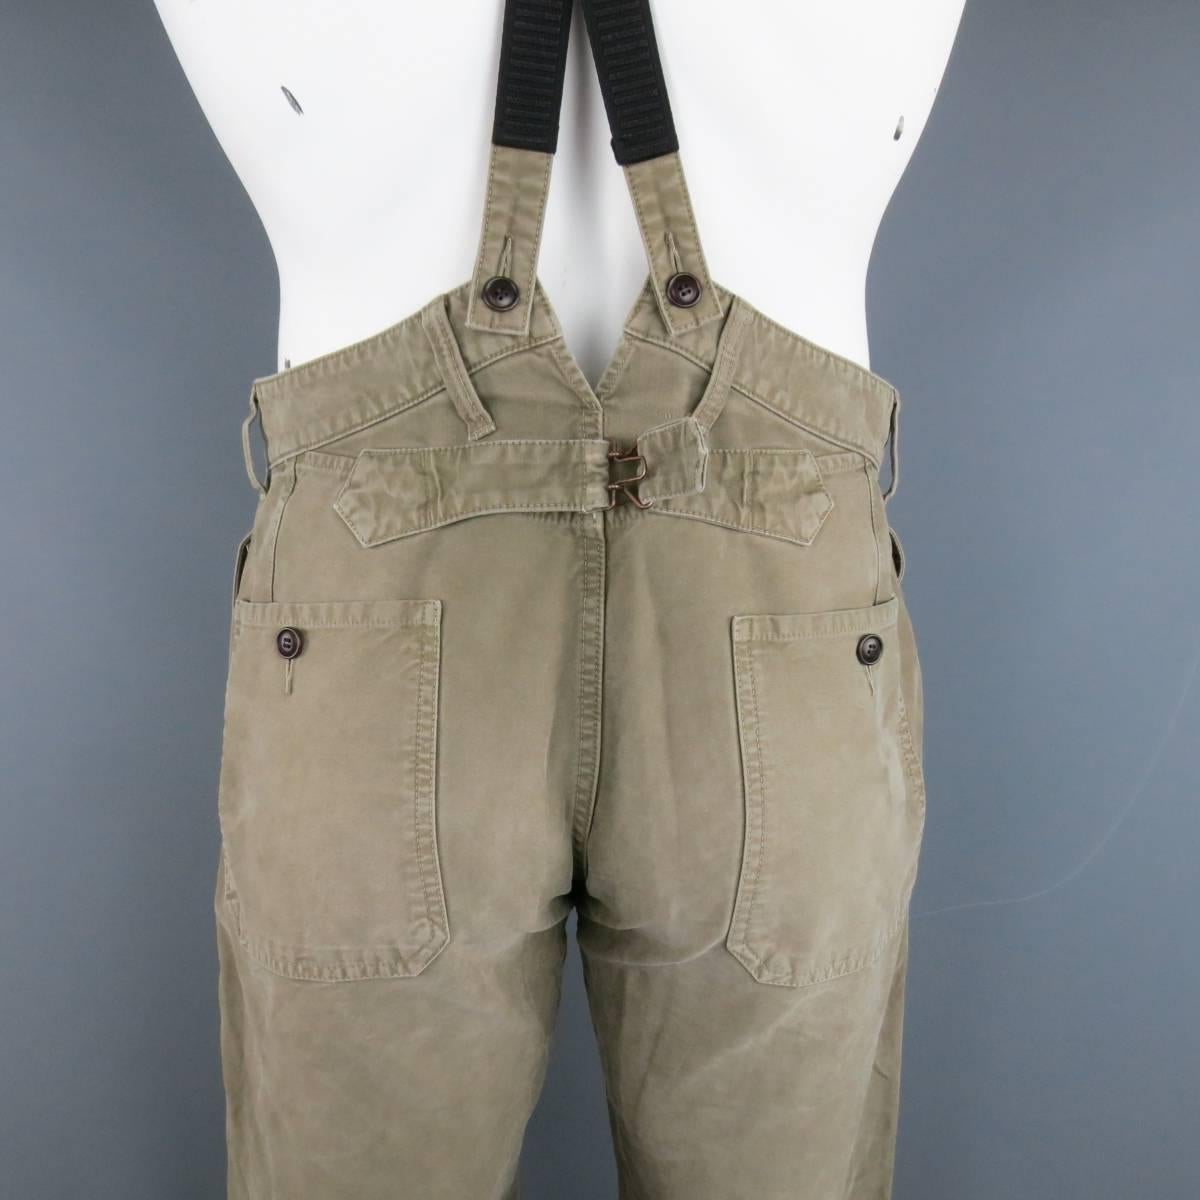 VISVIM Size 32 Olive Washed Cotton Pastoral Braces Suspender Pants 3